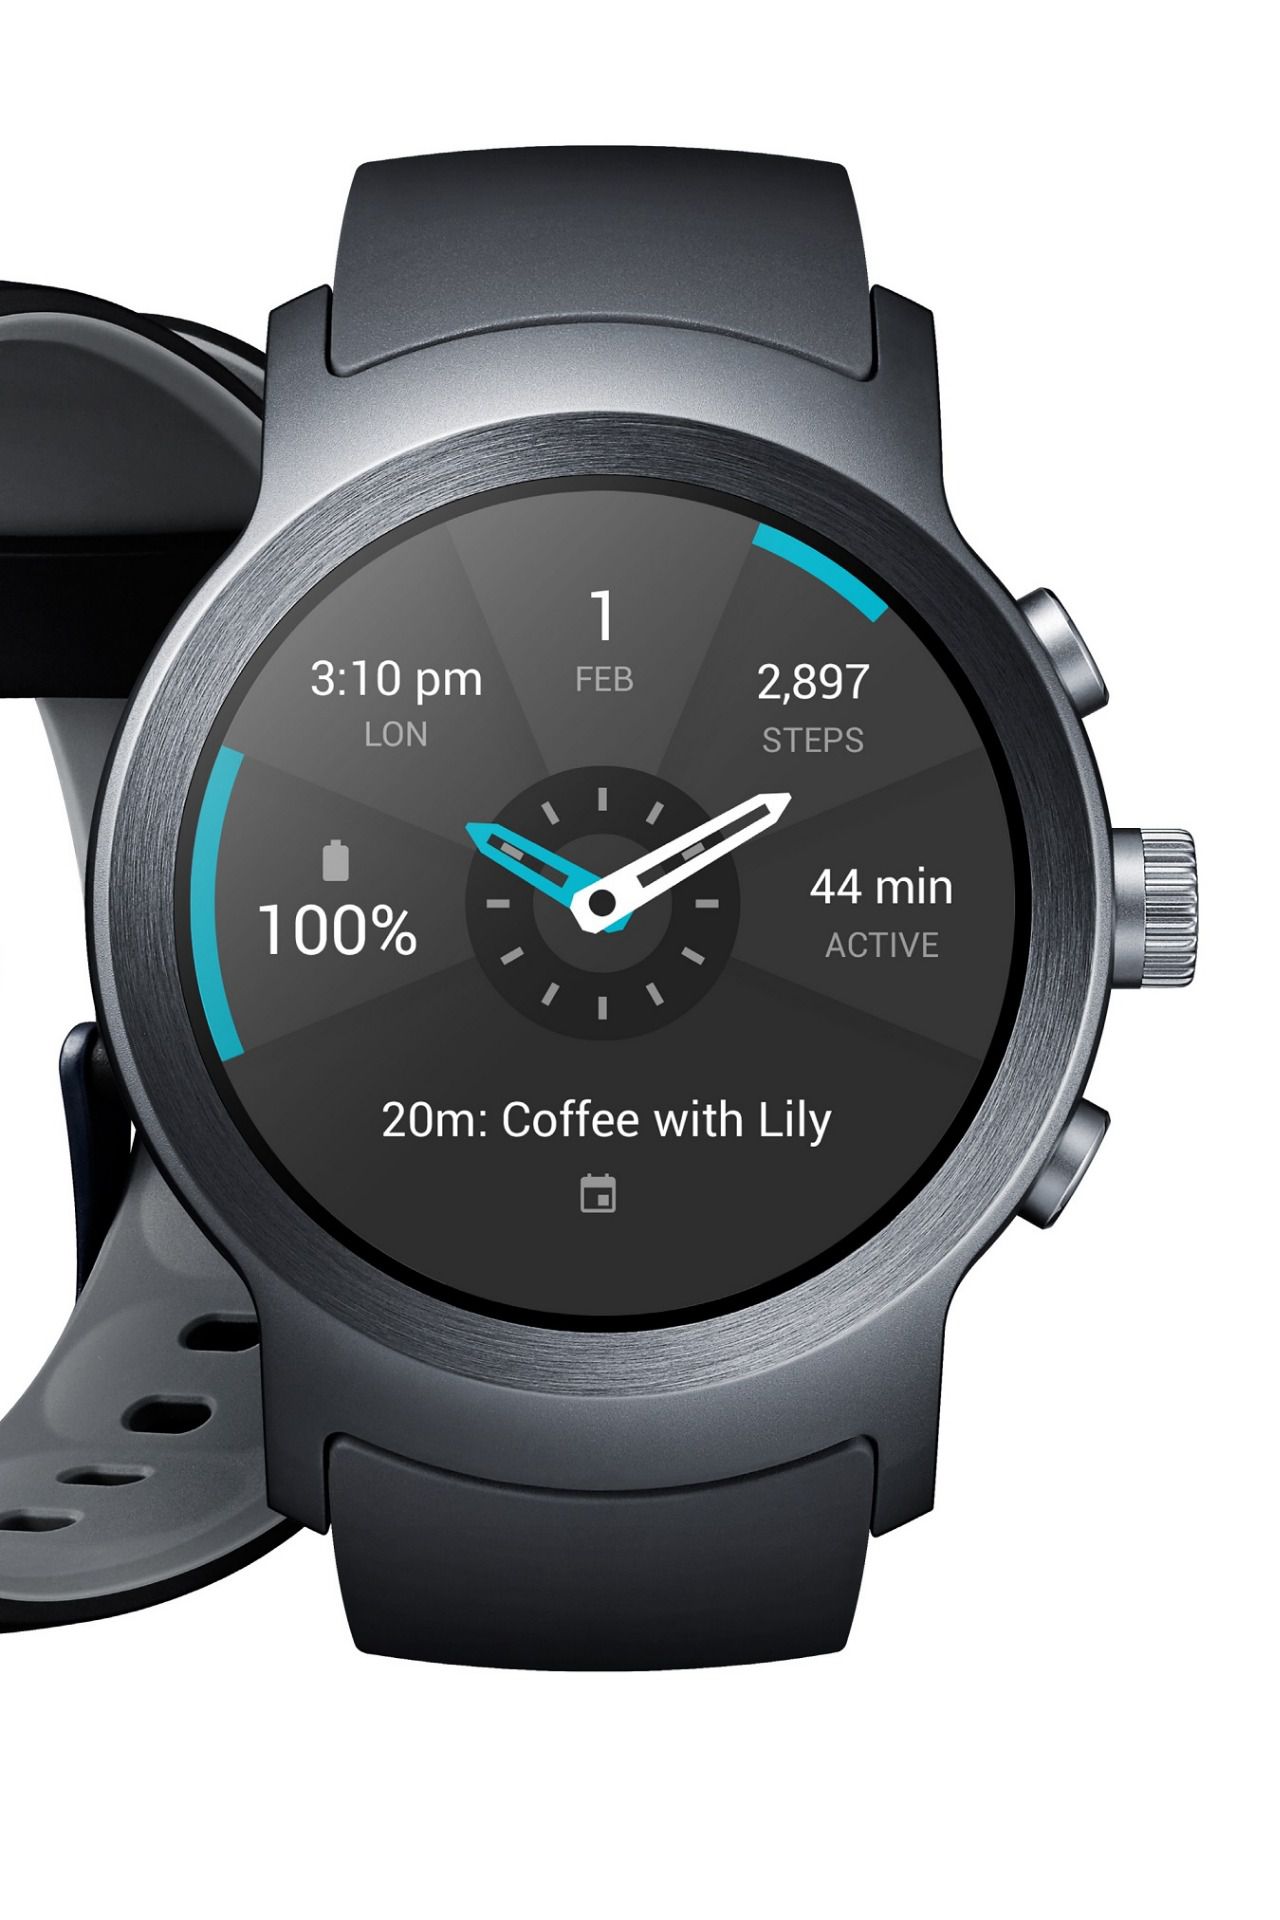 Primeros smartwatches con android wear 2.0 de LG y Google | Imagenacion